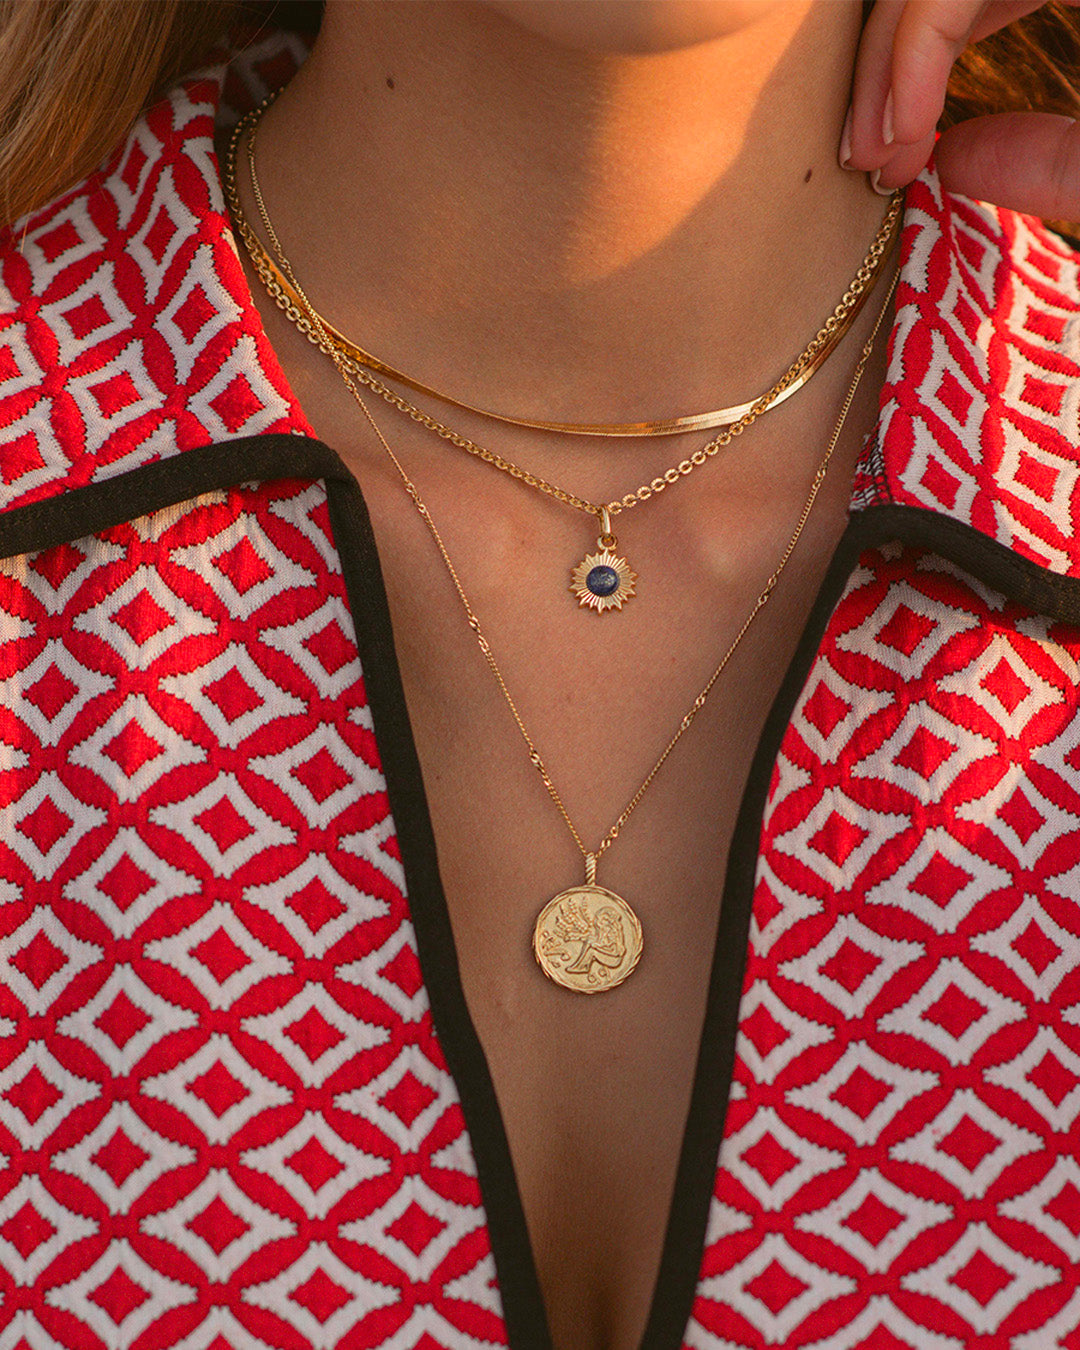 Association de colliers en plaqué or 3 microns composée d'un collier chaîne plate, d'un collier en maille soleil avec un pendentif en soleil avec une pierre éthique en lapis-lazuli, et d'un collier en maille fine avec un médaillon made in France.